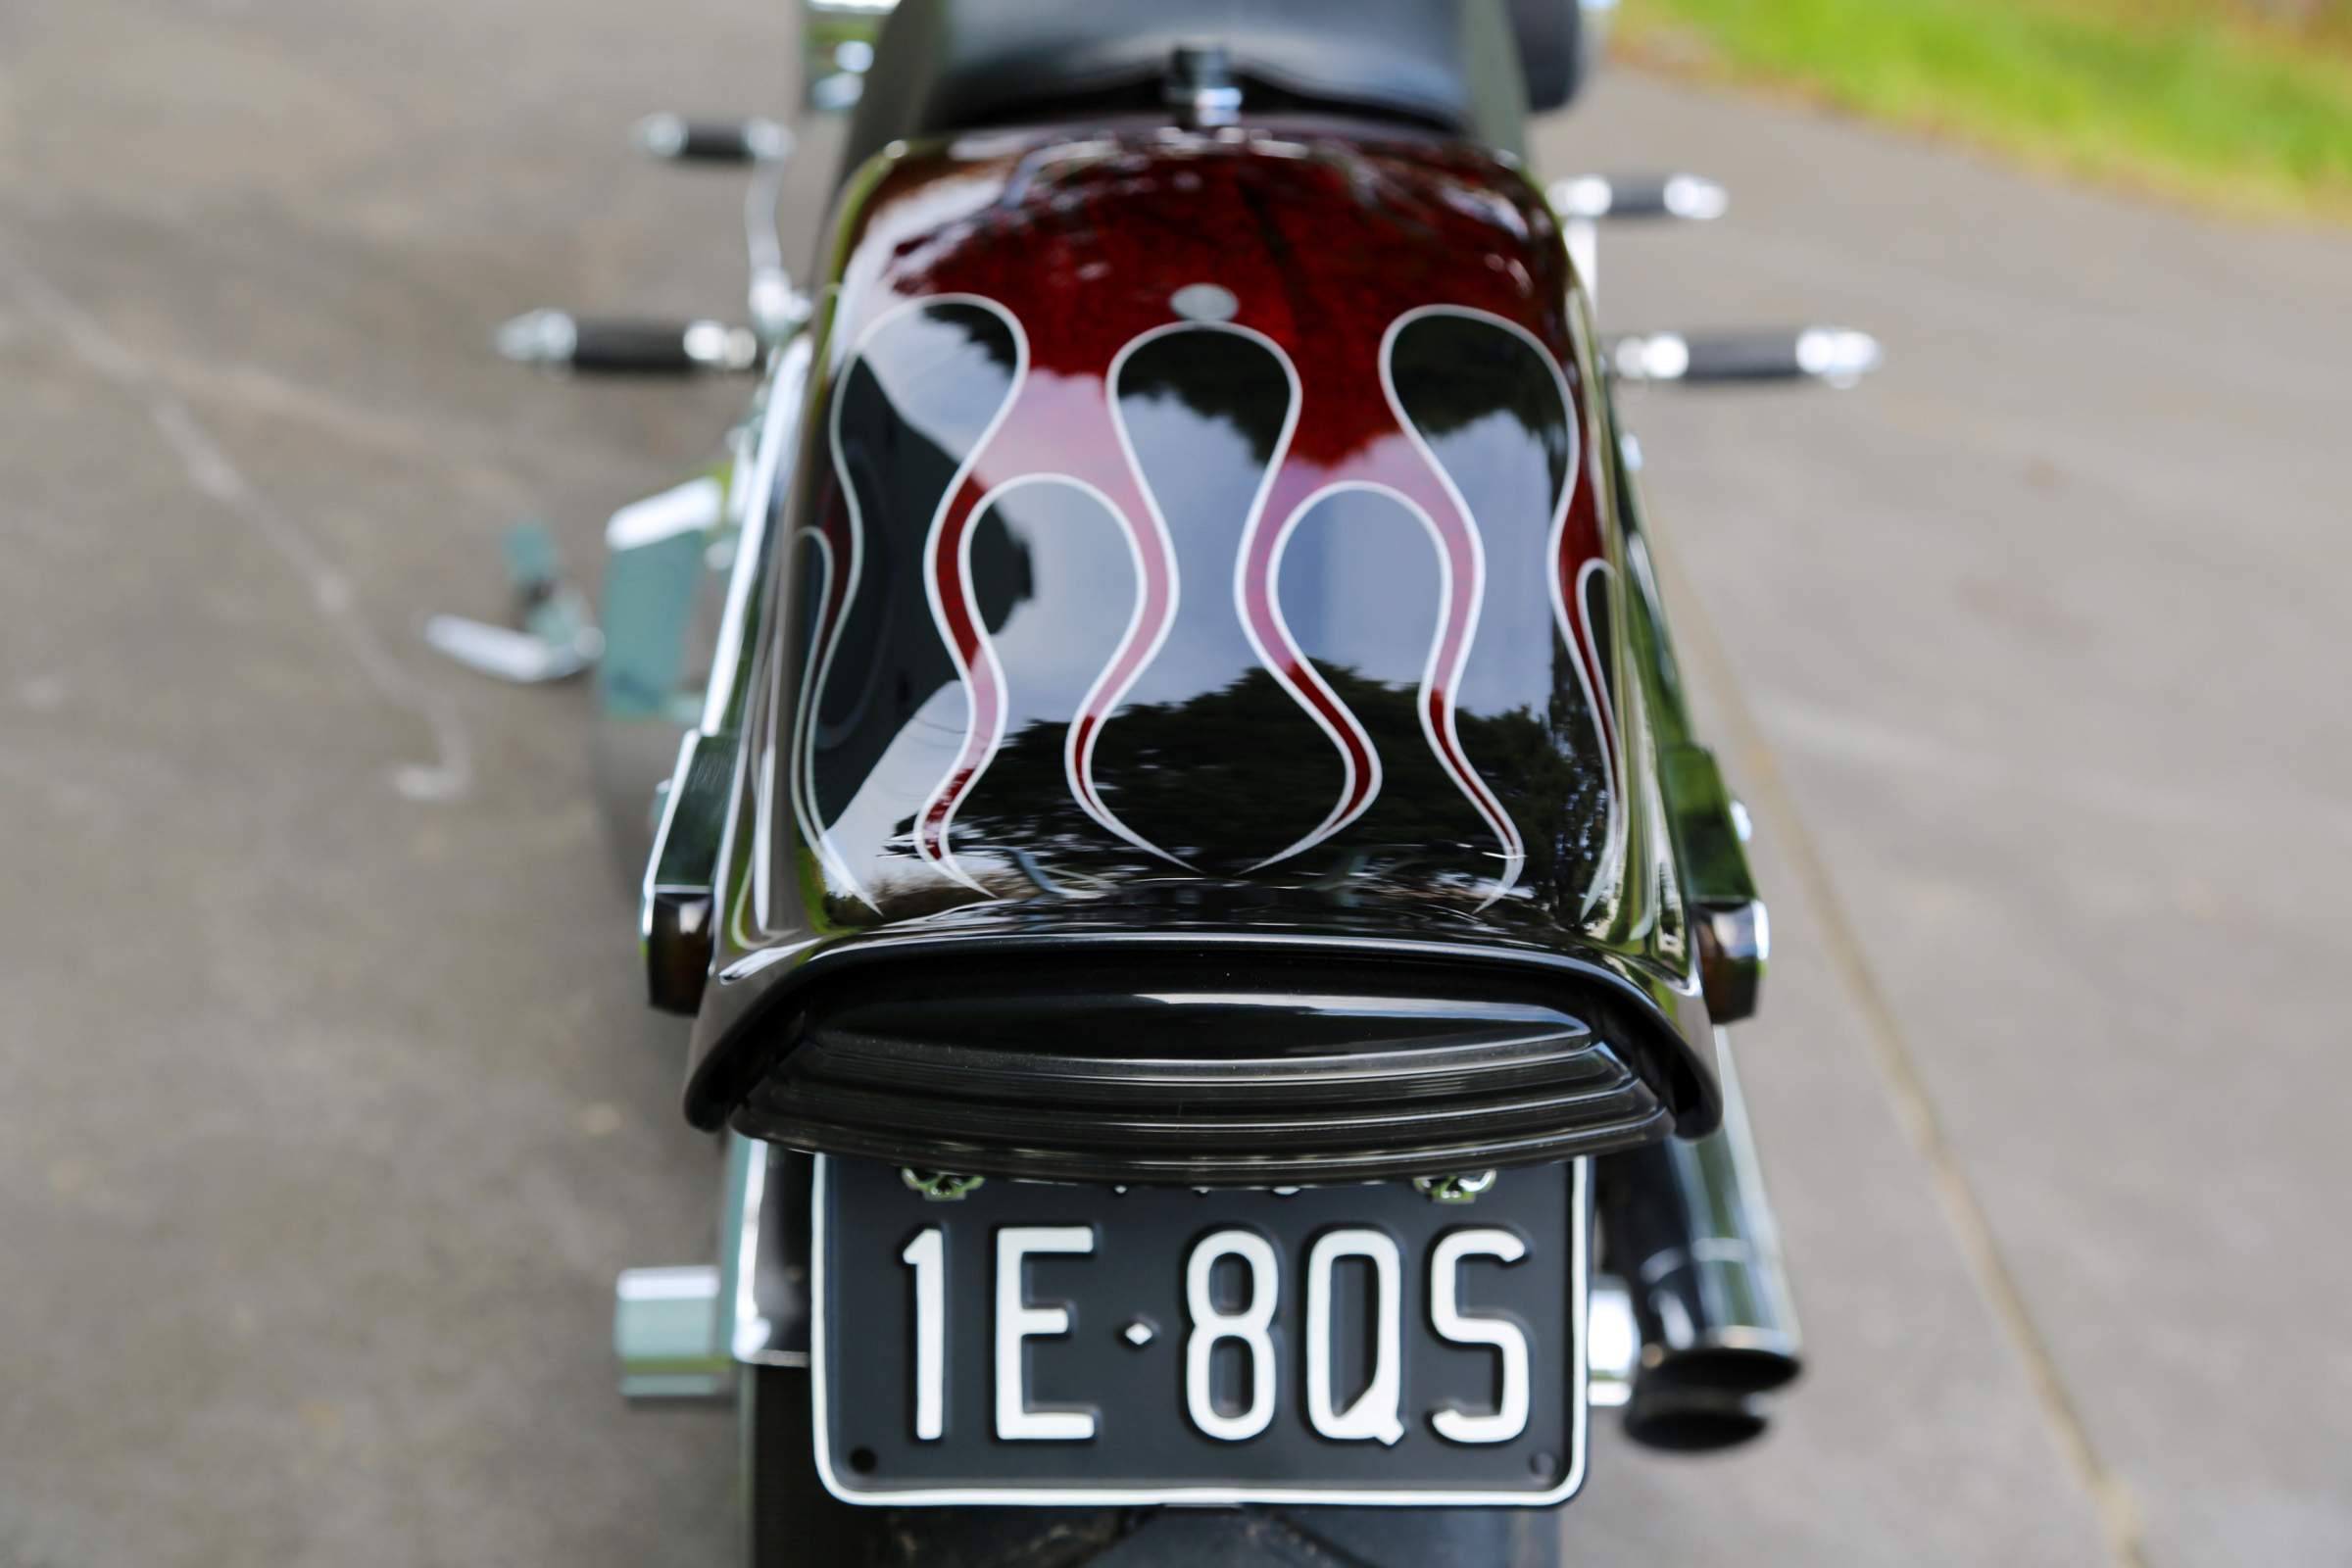 2007 Harley Davidson Softail Custom detail14